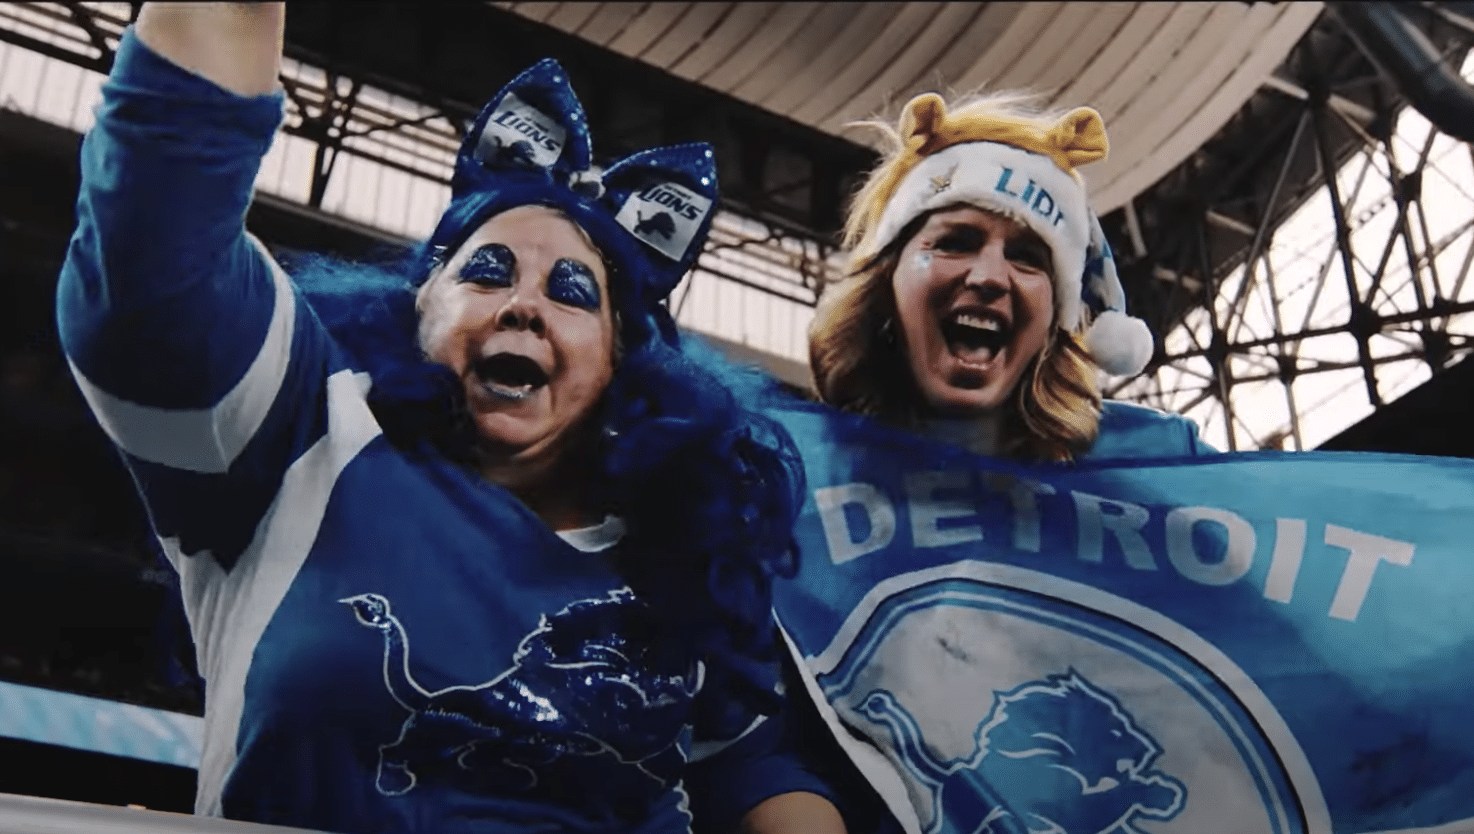 Detroit Lions Fans Super Bowl LVII Odds Detroit Lions Documentary Featuring Superfans How Detroit Lions can clinch Detroit Lions will have to wait